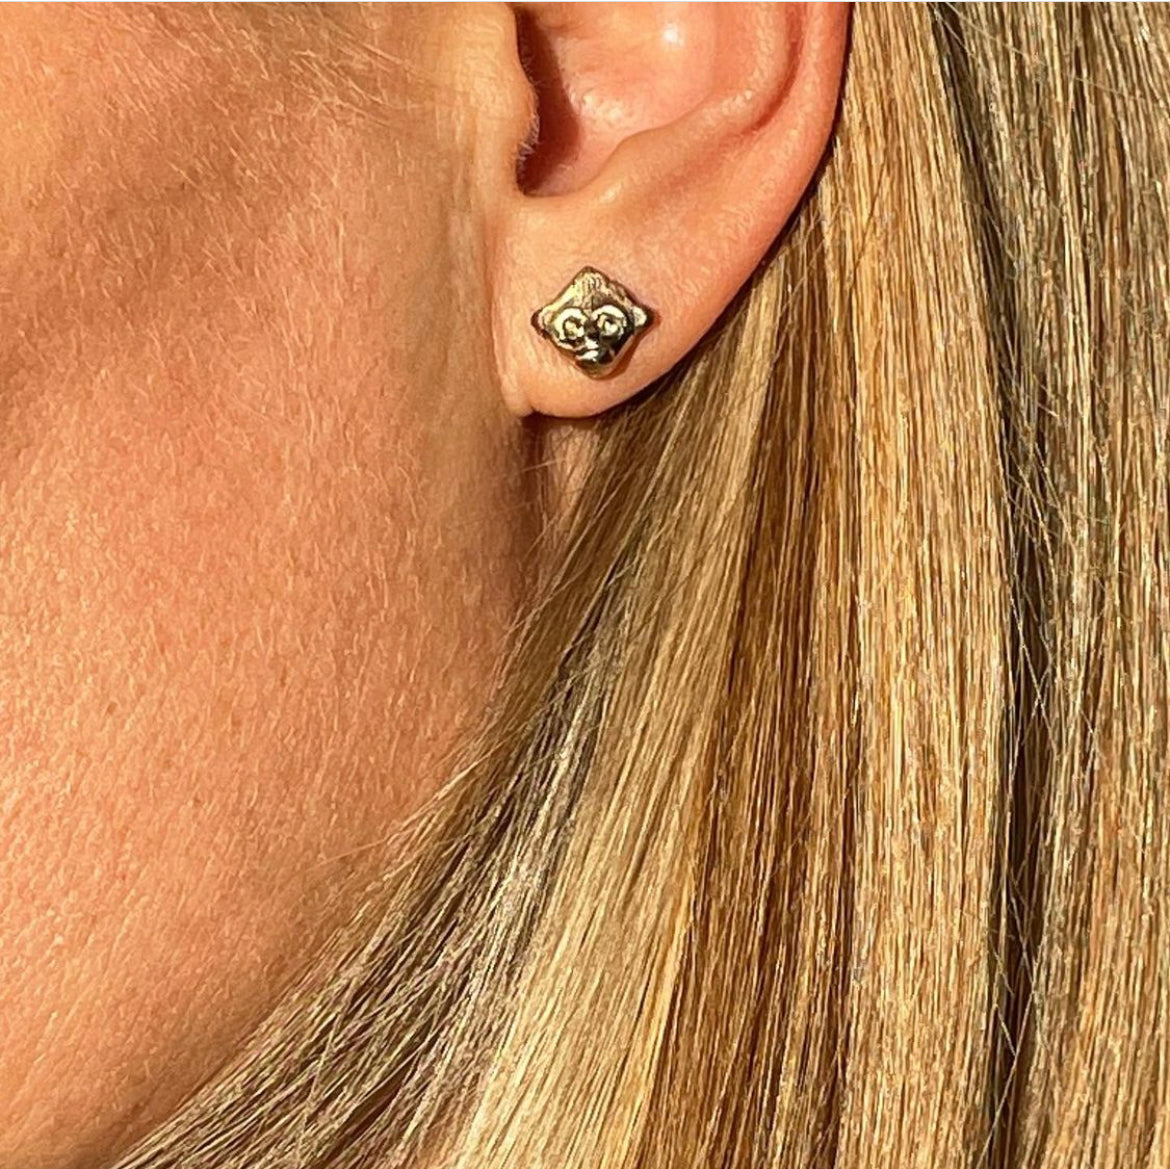 The Beasts. Monkeyface bronze earrings